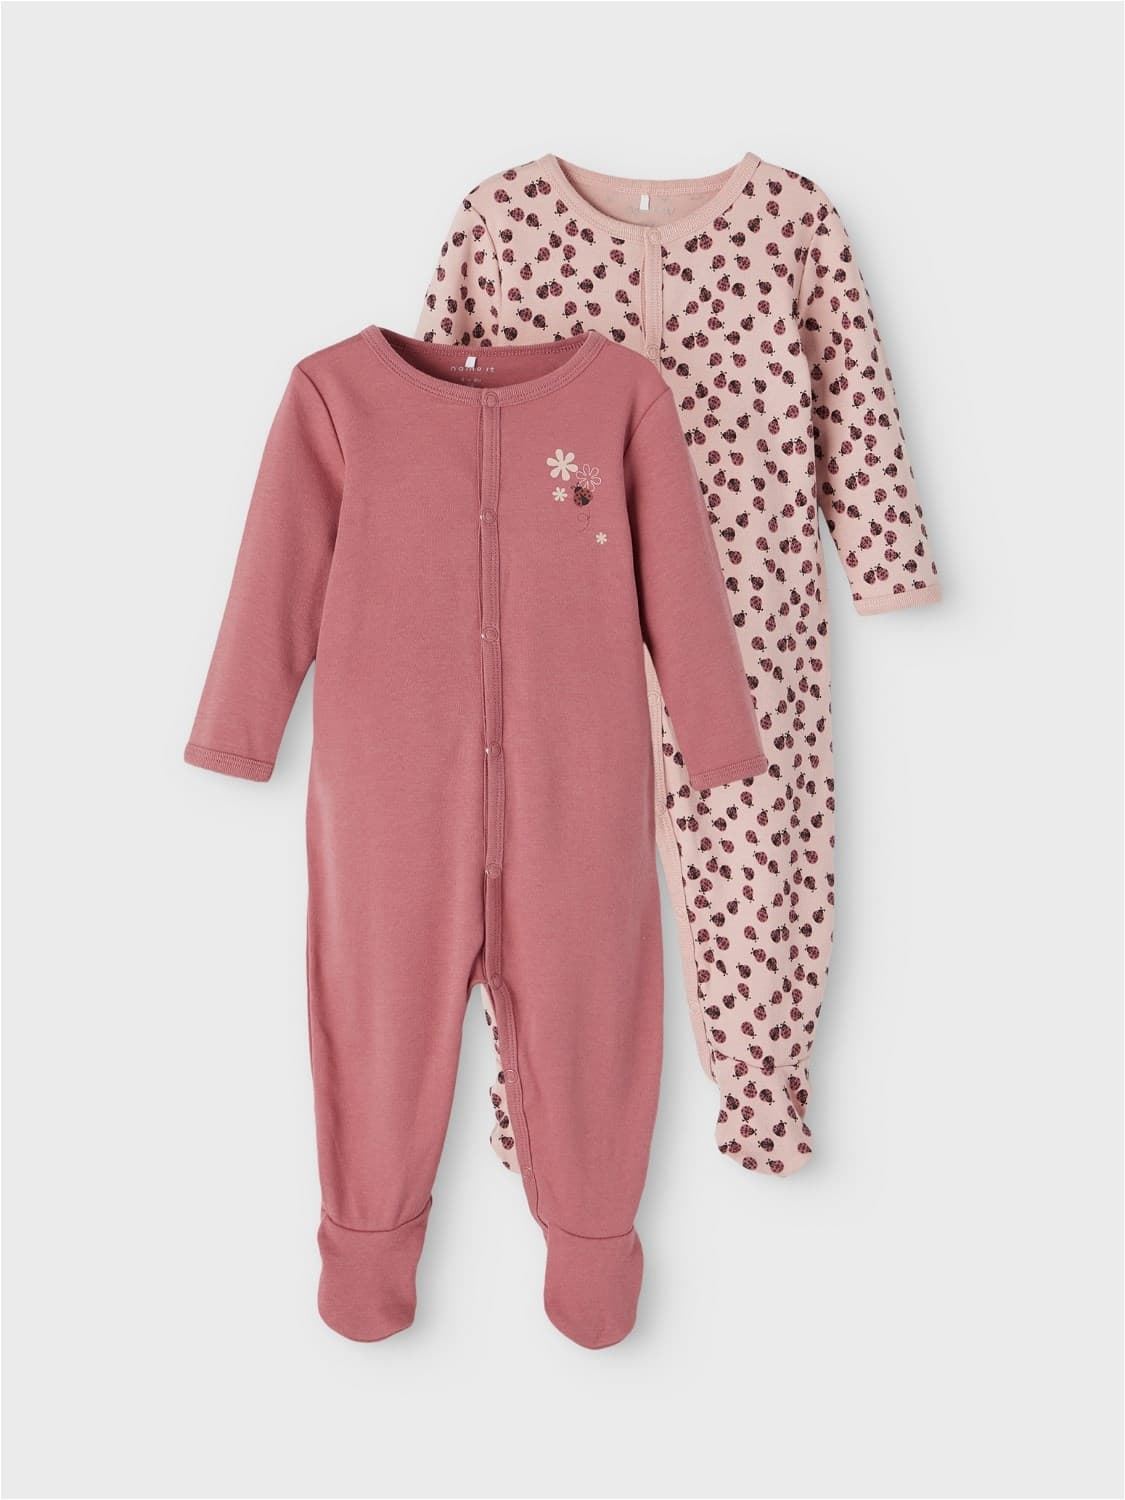 Pijama de bebé - Imagen 6